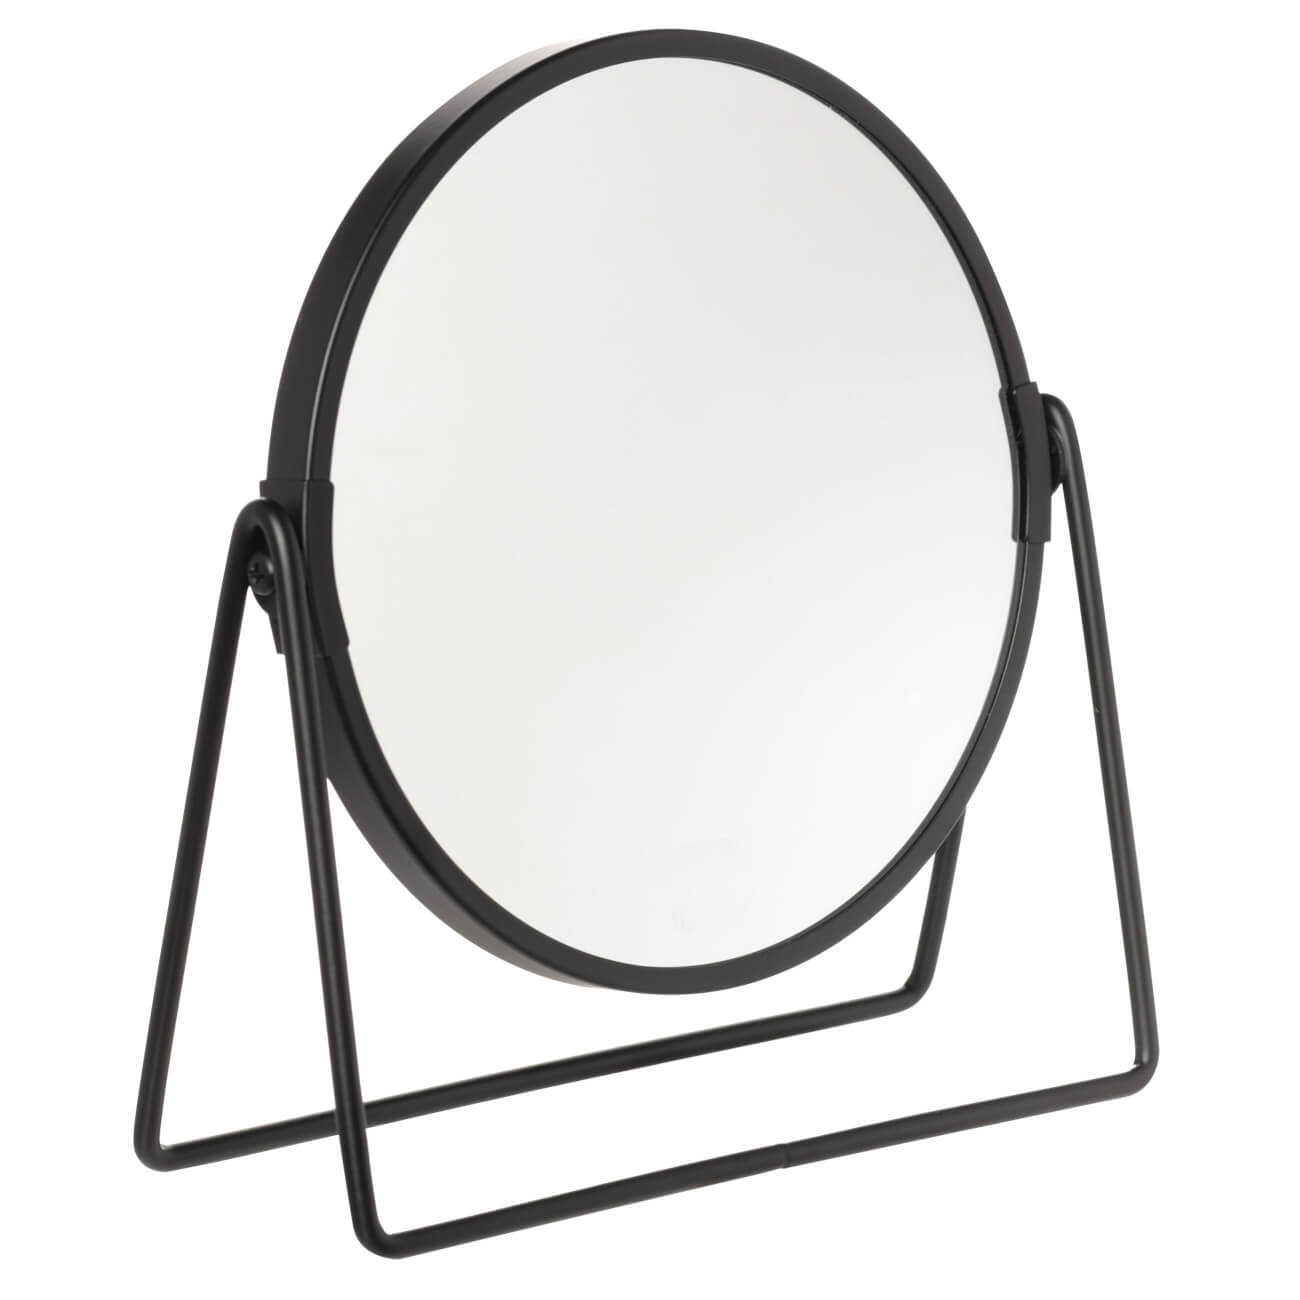 Зеркало настольное, 20 см, двустороннее, металл, круглое, черное, Graphic зеркало настольное 20 см двустороннее металл круглое черное graphic